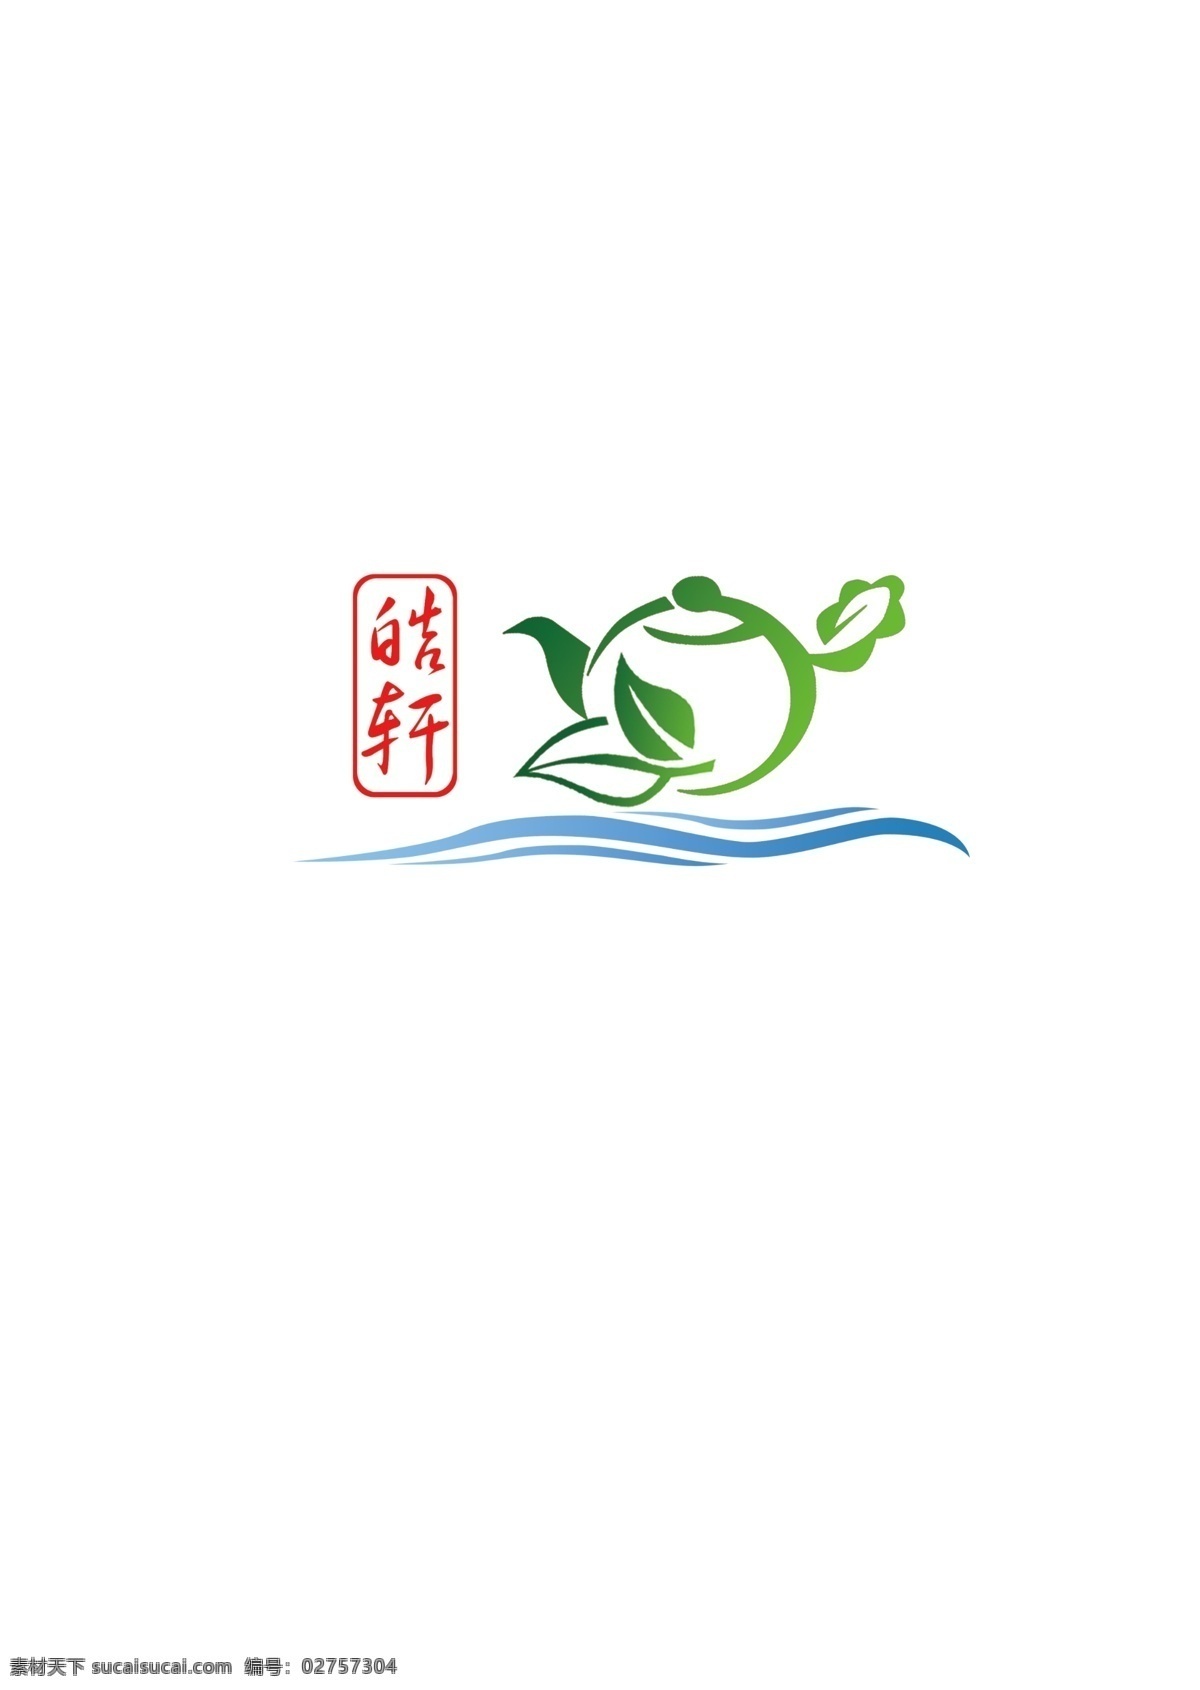 茶叶标志 标志设计 皓轩 绿叶 草地 地球 大地 医院标志 健康理念 茶叶 中国元素 广告设计模板 源文件 生活百科 餐饮美食